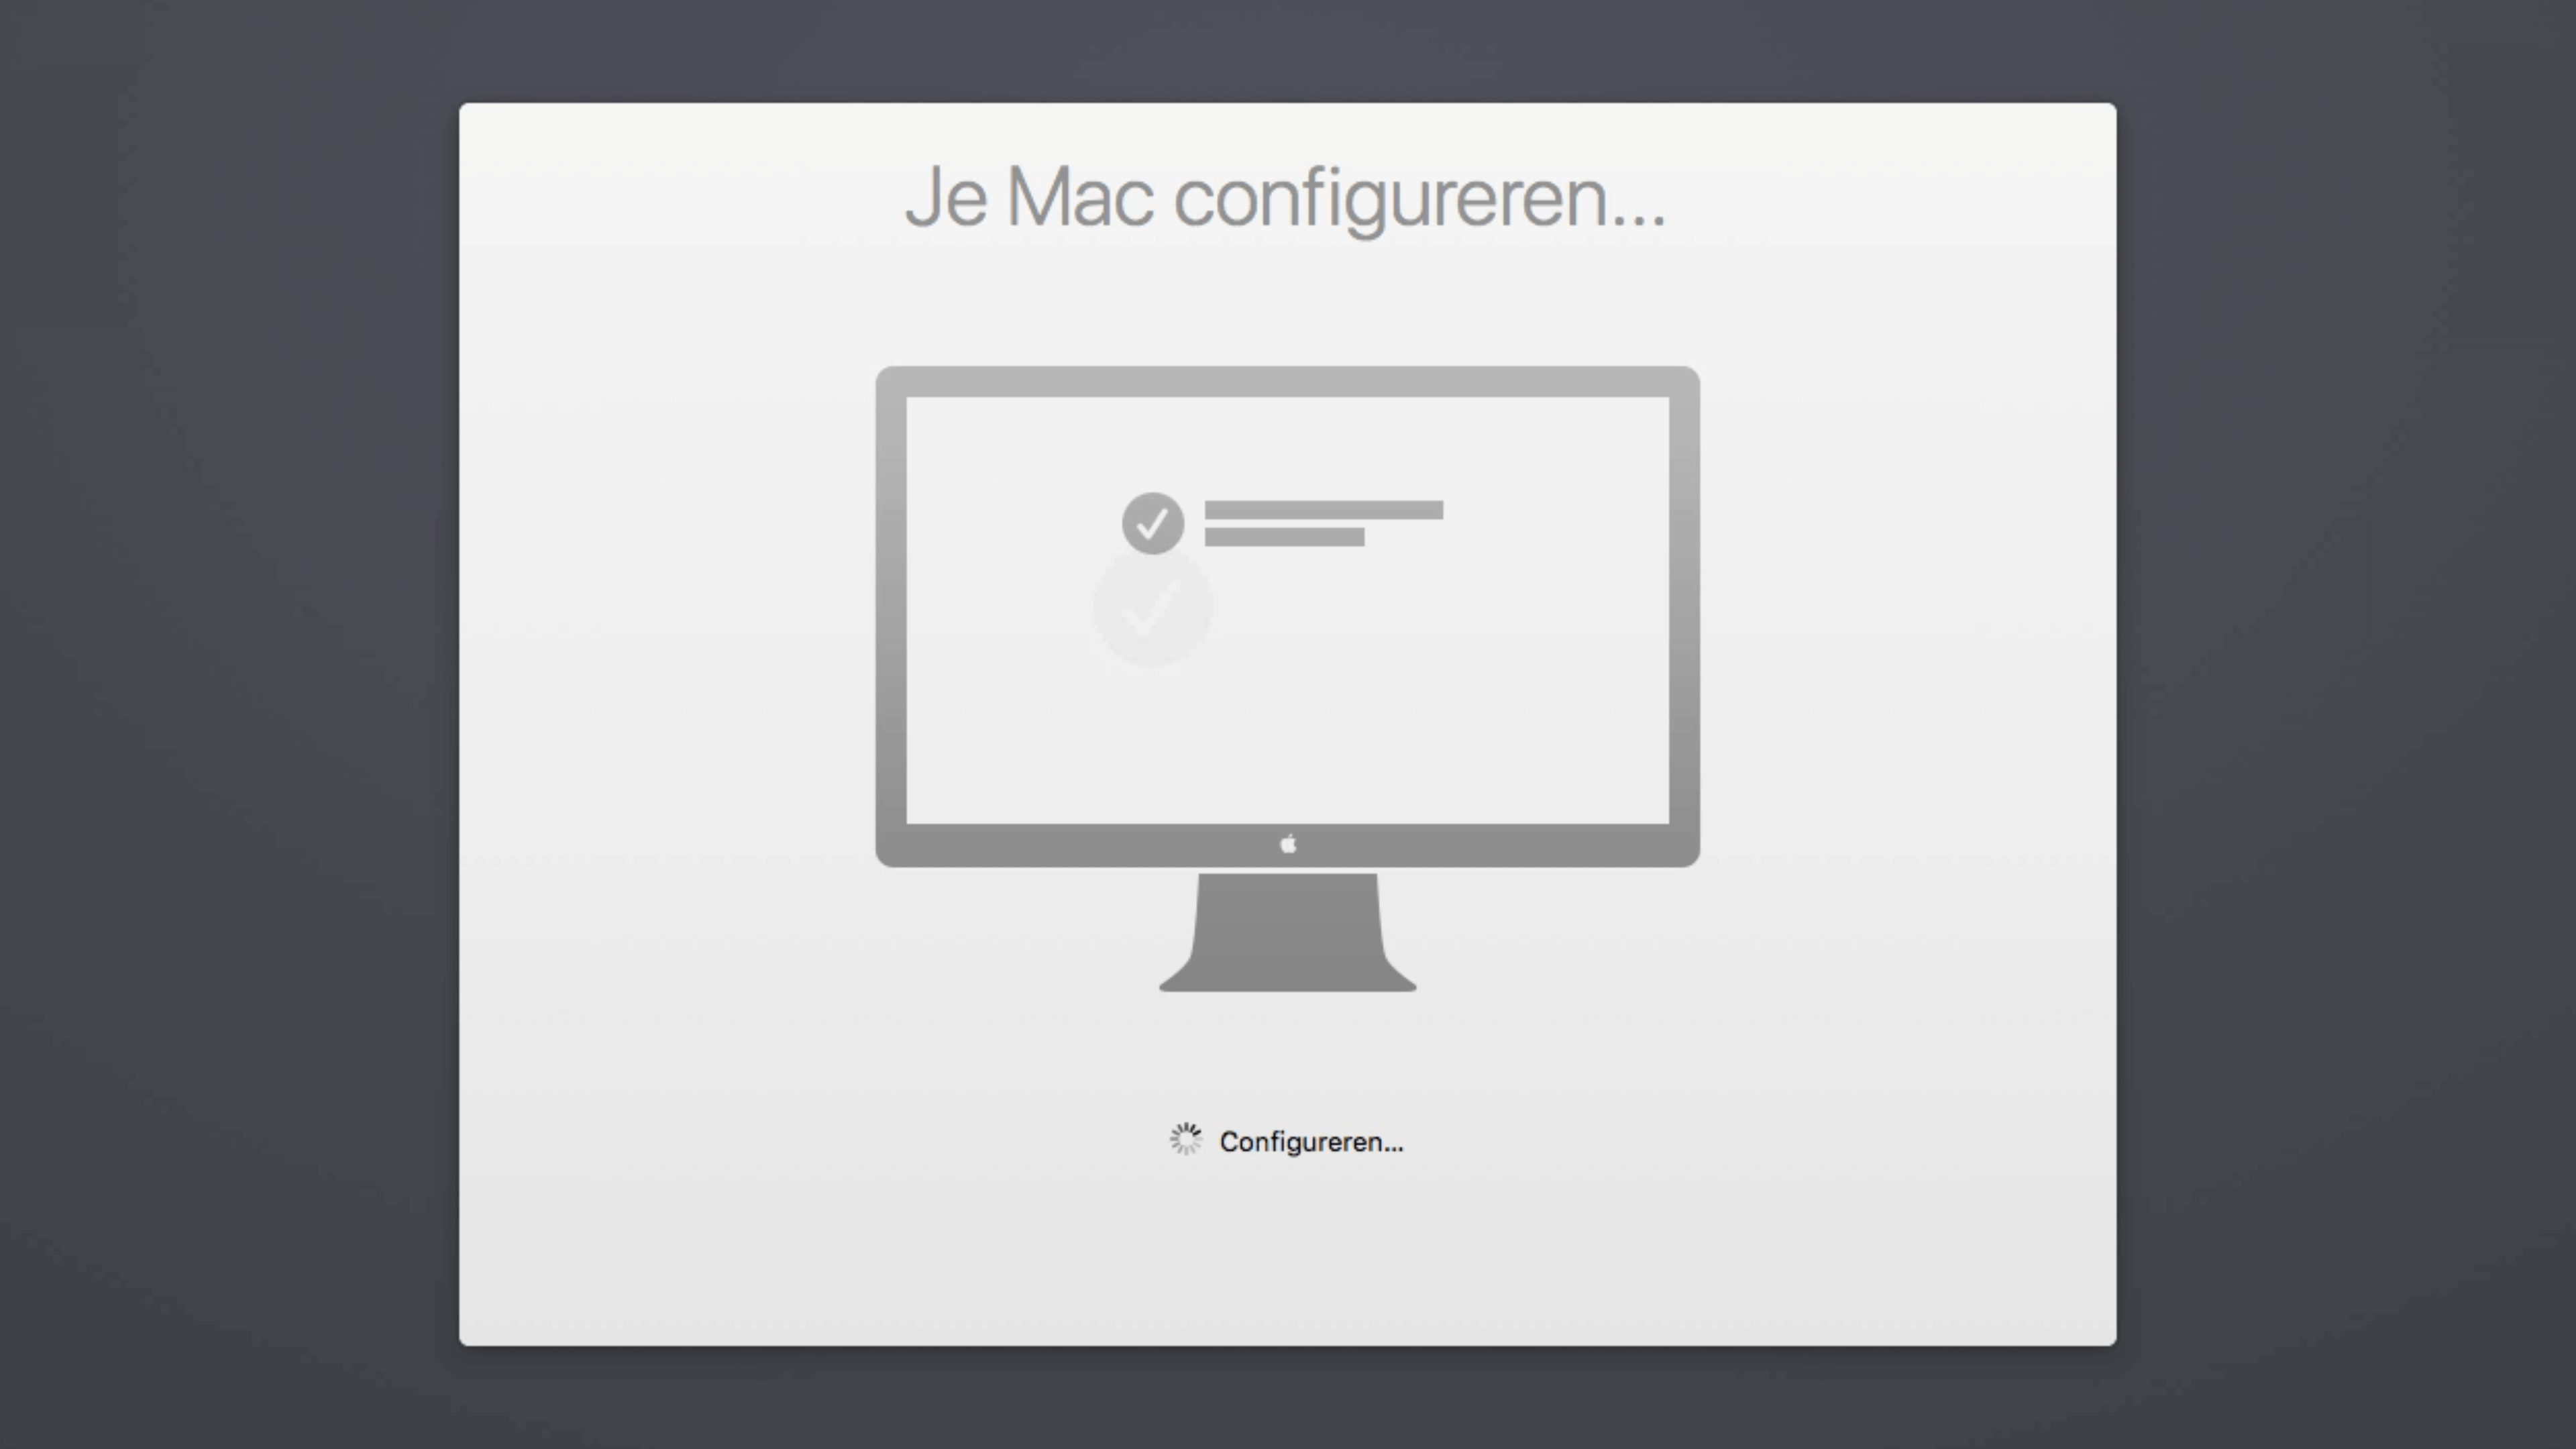 De eerste keer inloggen als een nieuwe gebruiker doet erg denken aan de eerste keer dat je een nieuwe Mac opzet